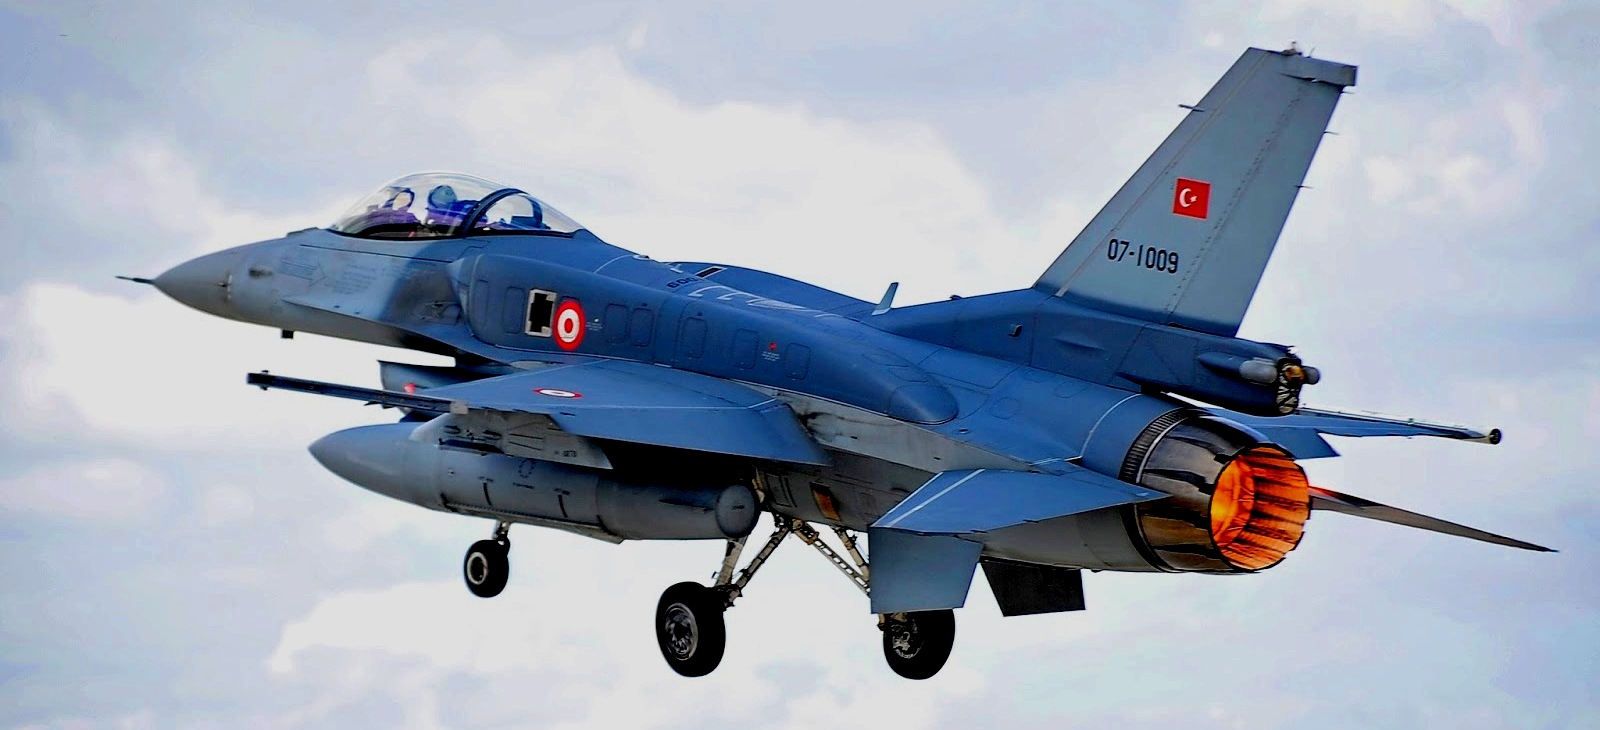 Αποκλειστικό: Οι τρεις άγνωστες «πτώσεις» τουρκικών μαχητικών στο Αιγαίο σε αερομαχίες με μαχητικά της ΠΑ